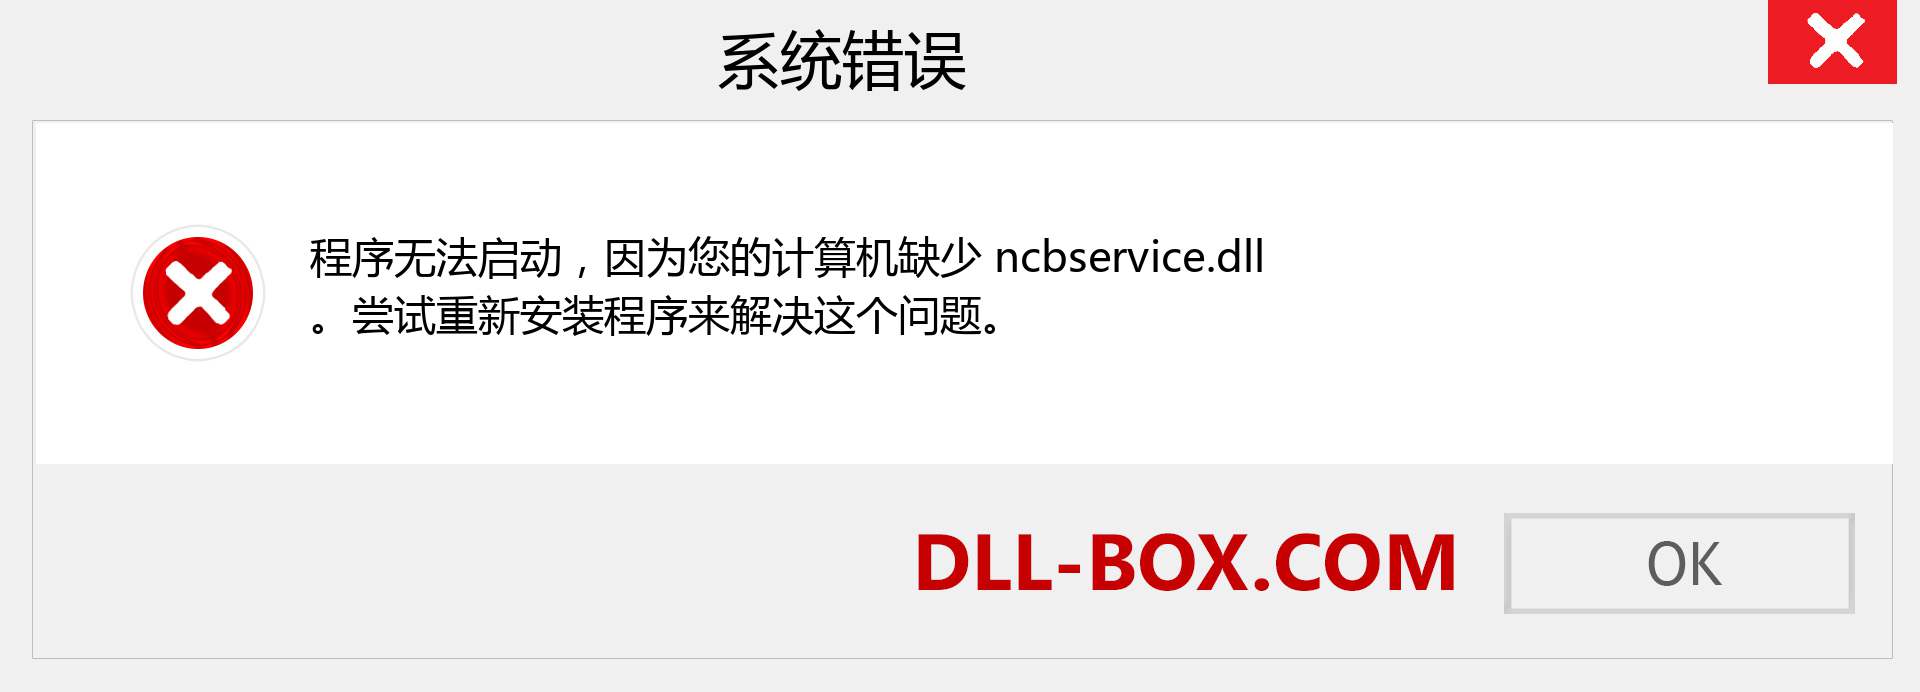 ncbservice.dll 文件丢失？。 适用于 Windows 7、8、10 的下载 - 修复 Windows、照片、图像上的 ncbservice dll 丢失错误